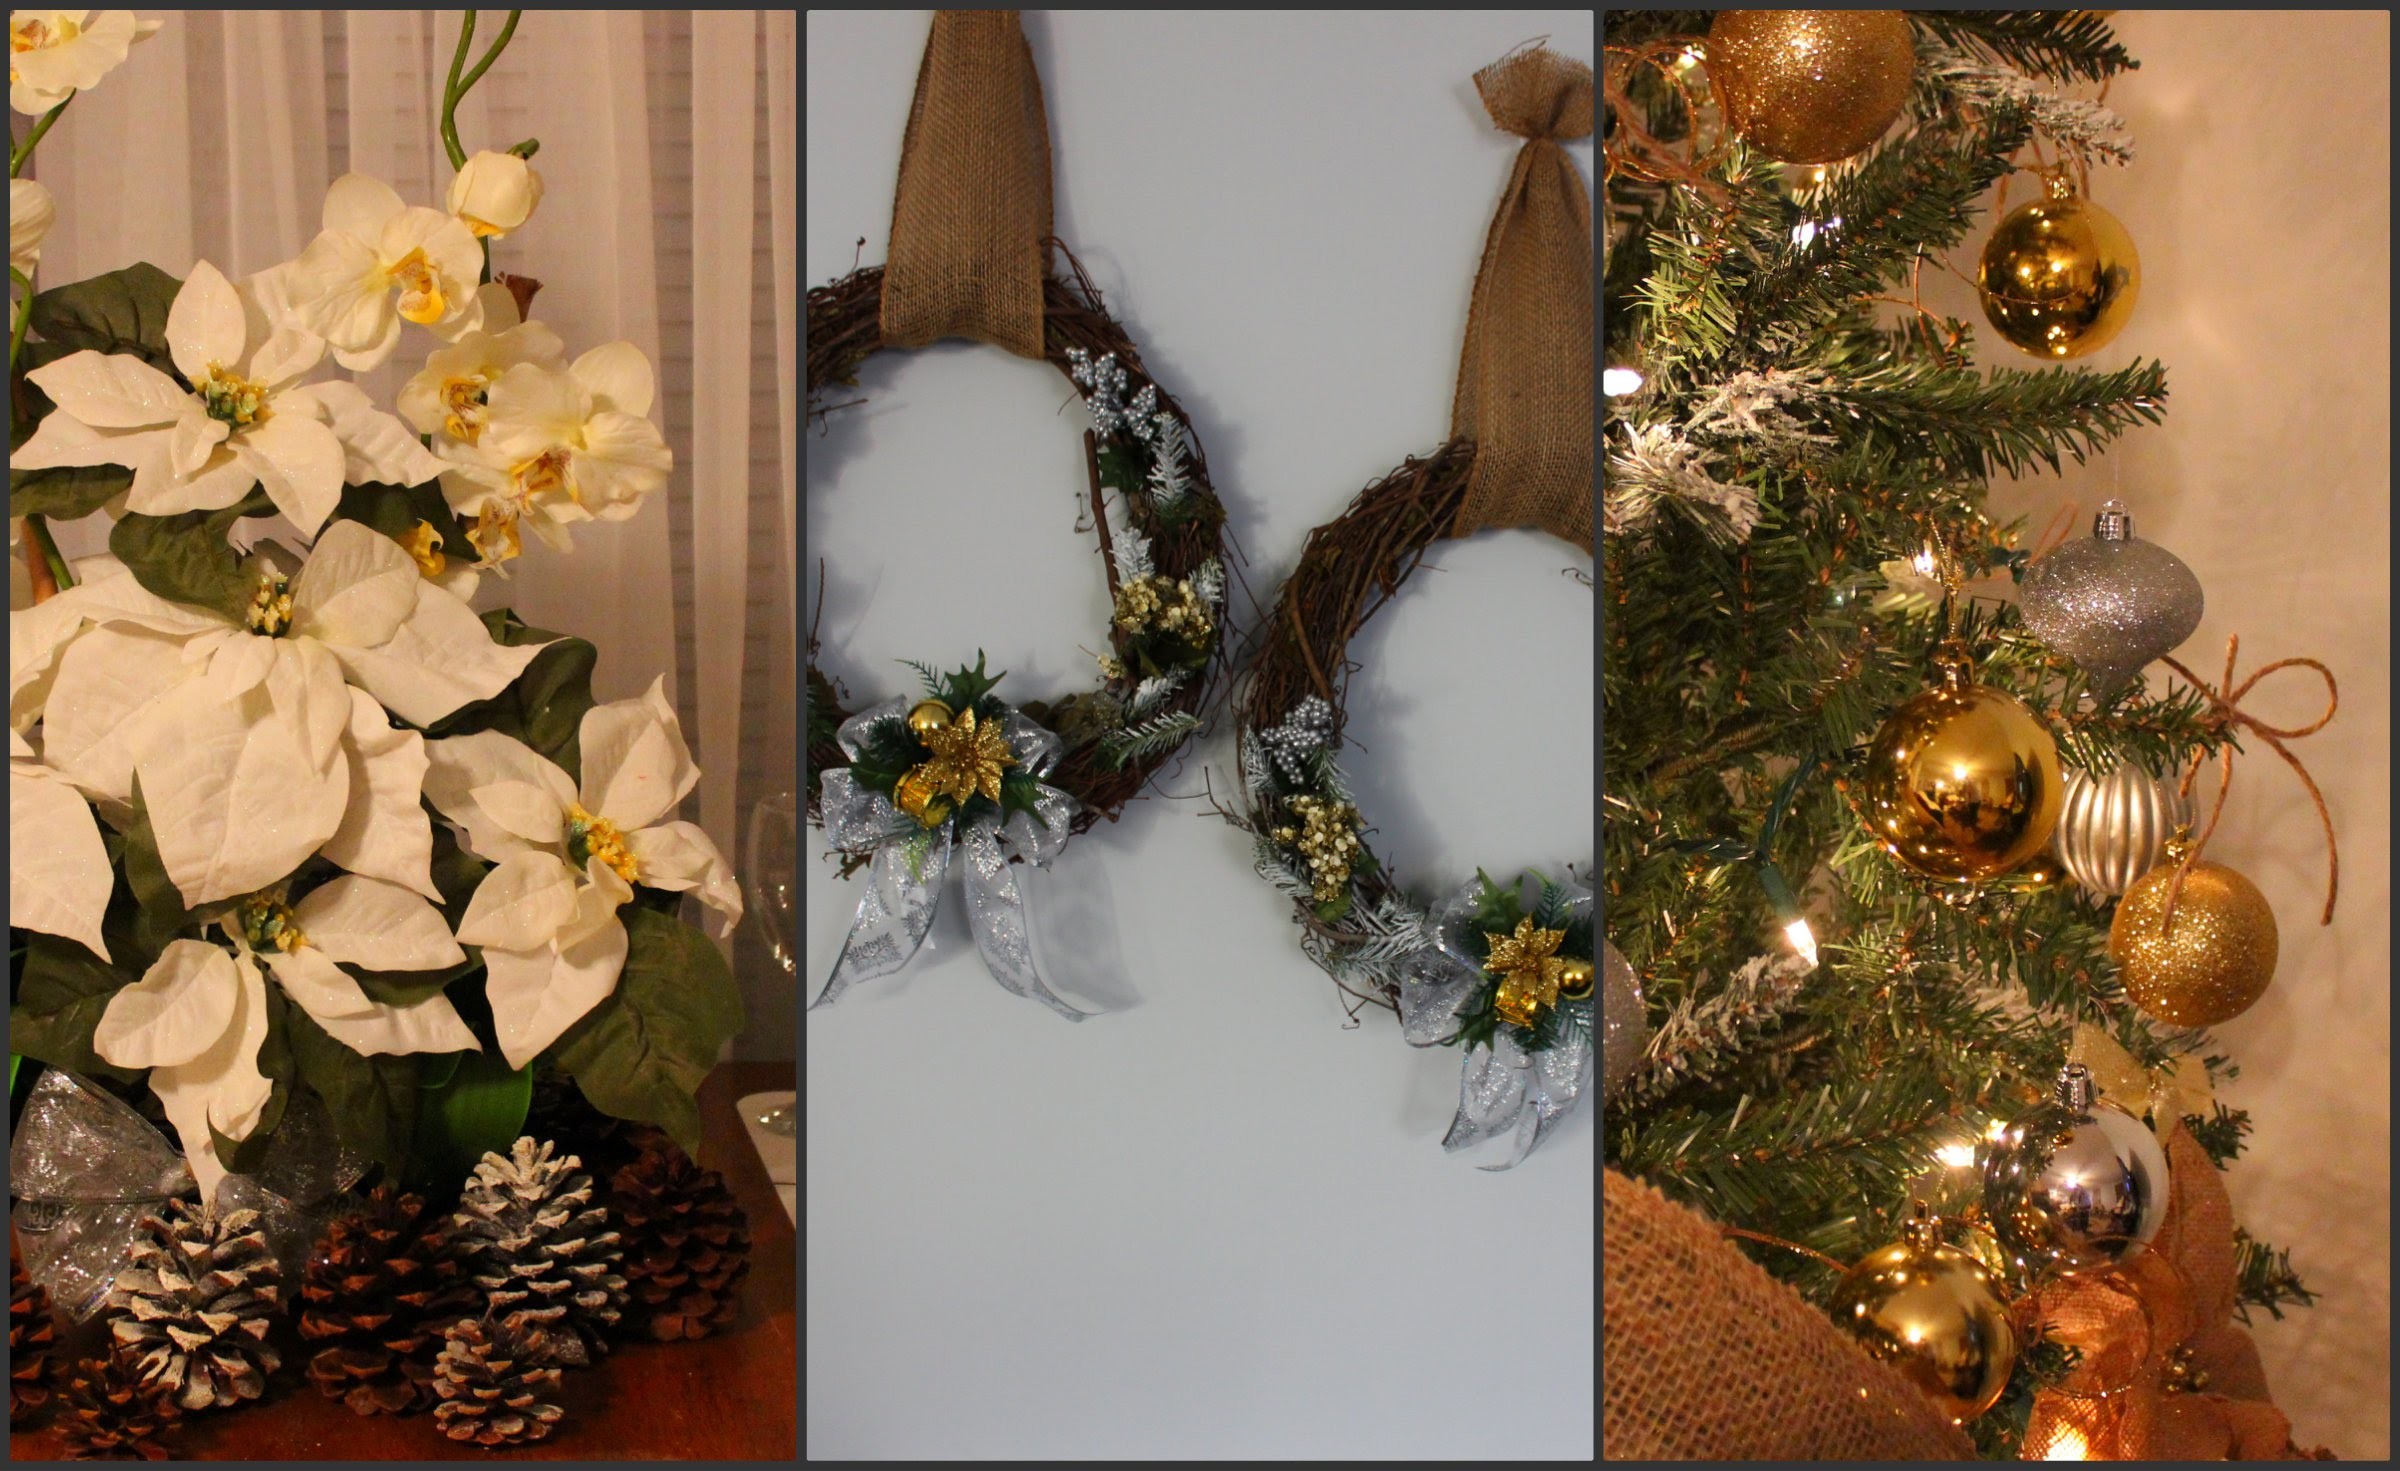 DIY Decoraciones Navideñas faciles y chulisimas! hechas en casa! 2014